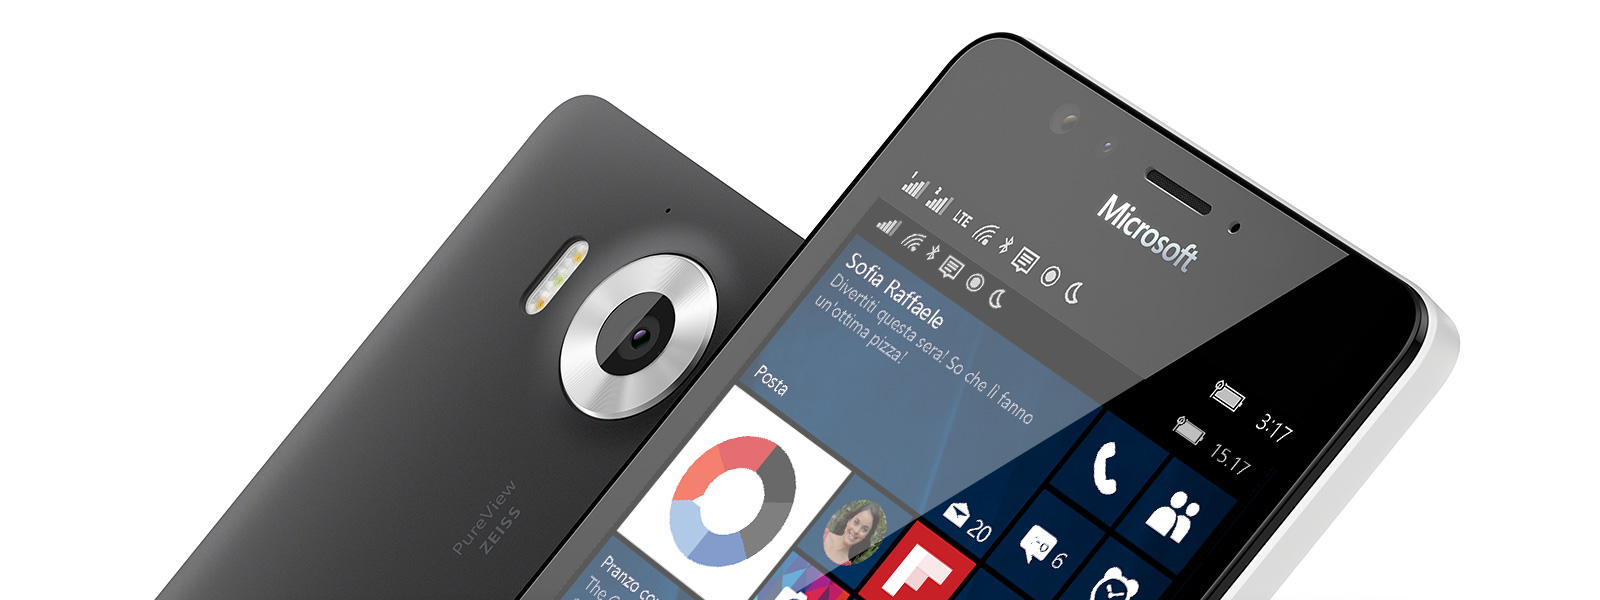 Ultimo aggiornamento disponibile per Windows 10 Mobile